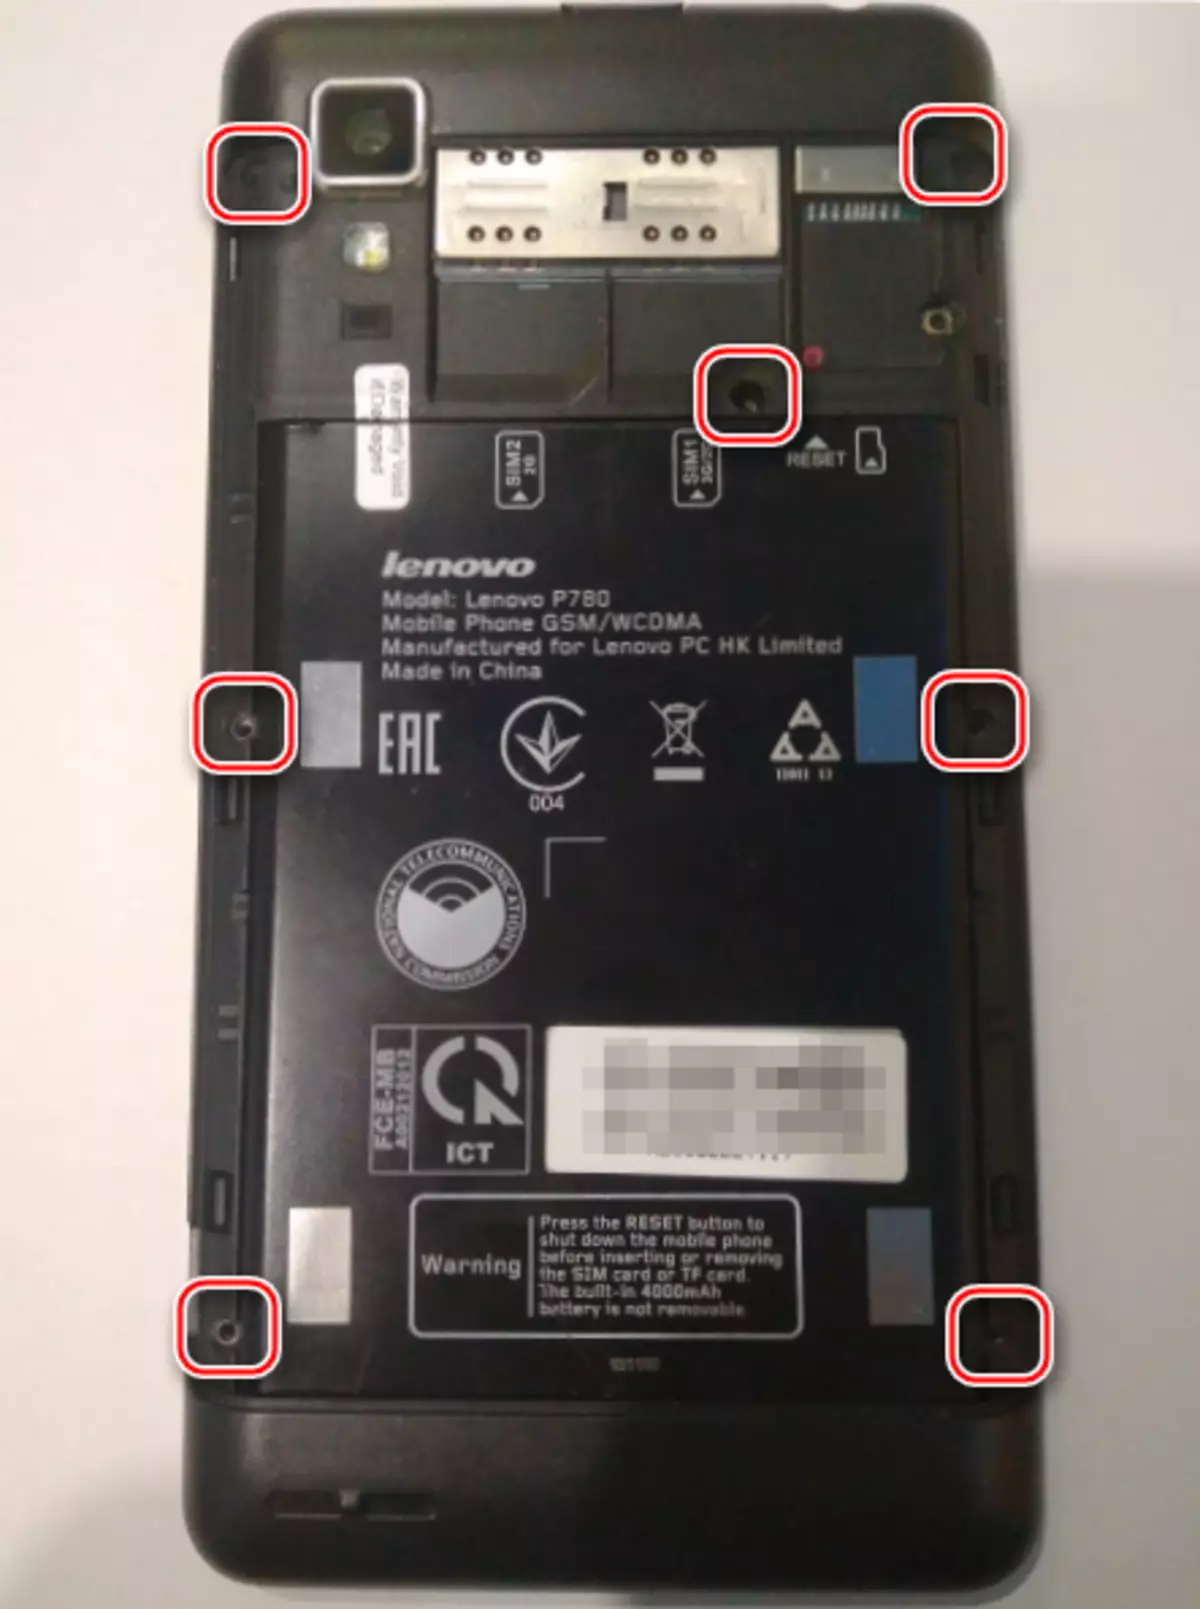 Ang Lenovo P780 gikuha ang likud nga panel aron i-off ang baterya